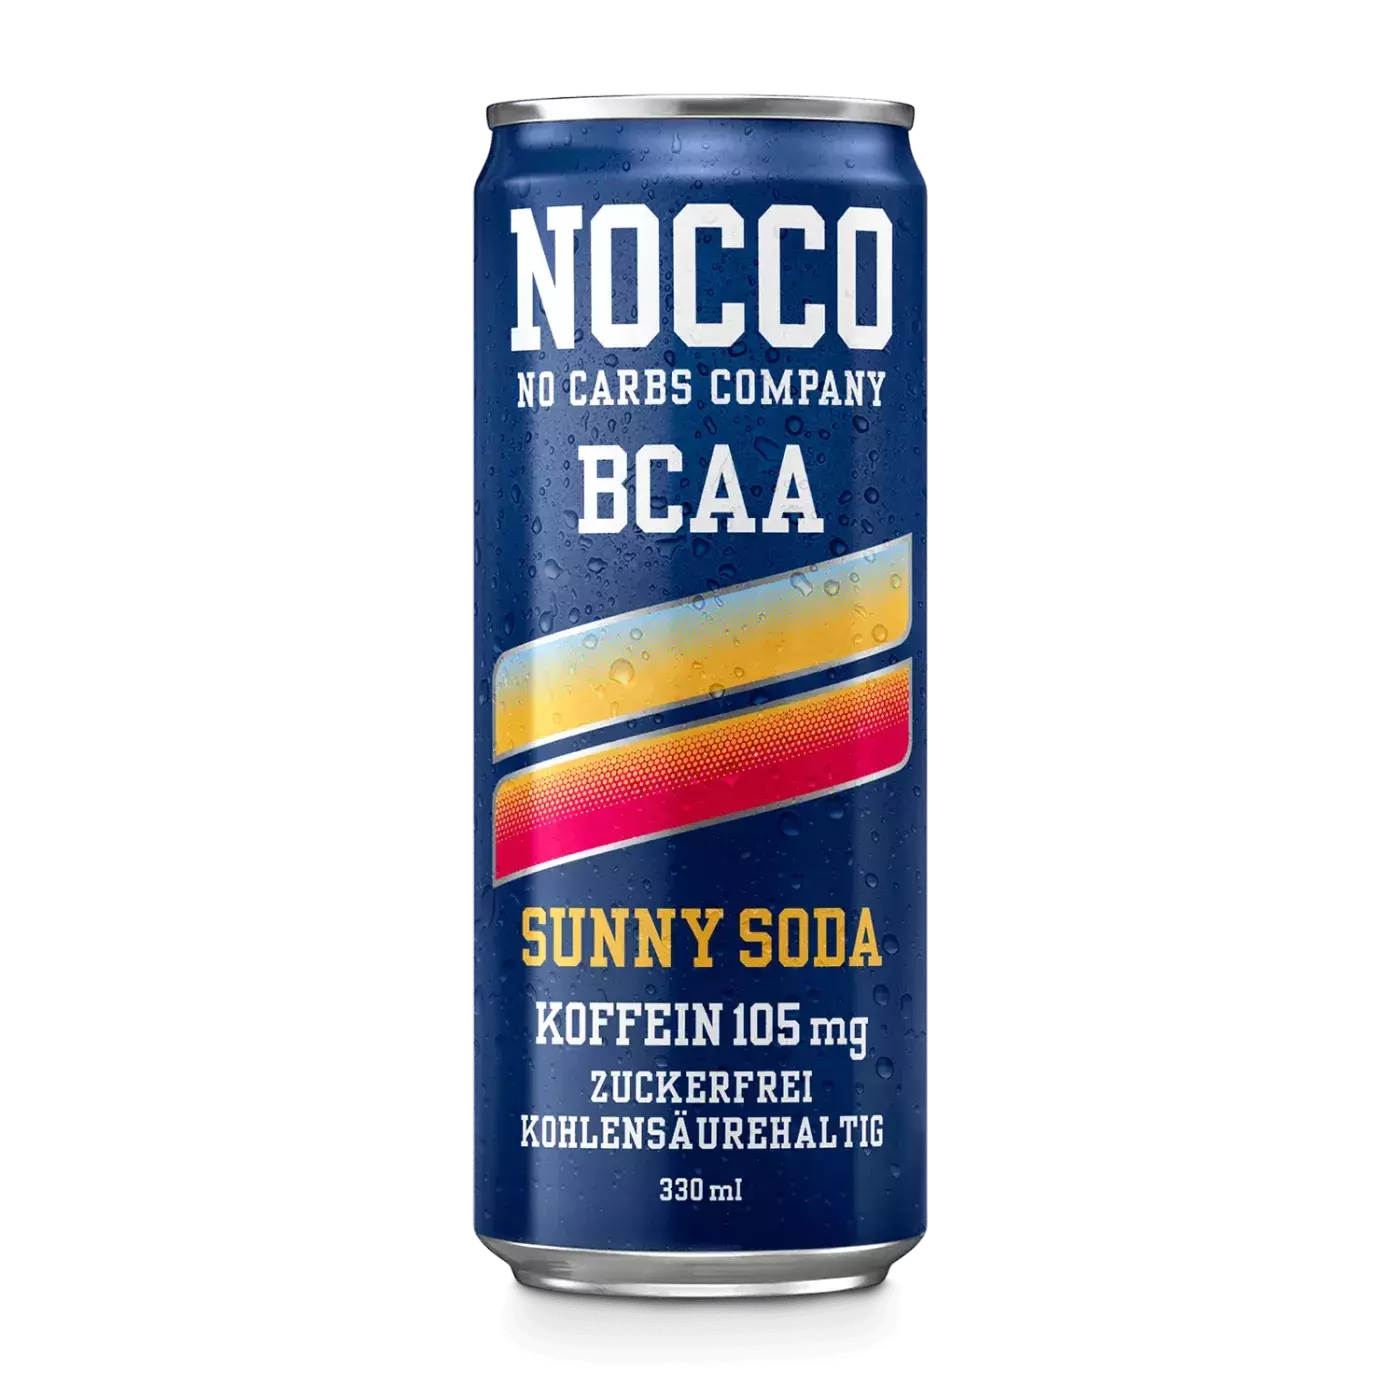 BCAA-Drink Sunny Soda von Nocco